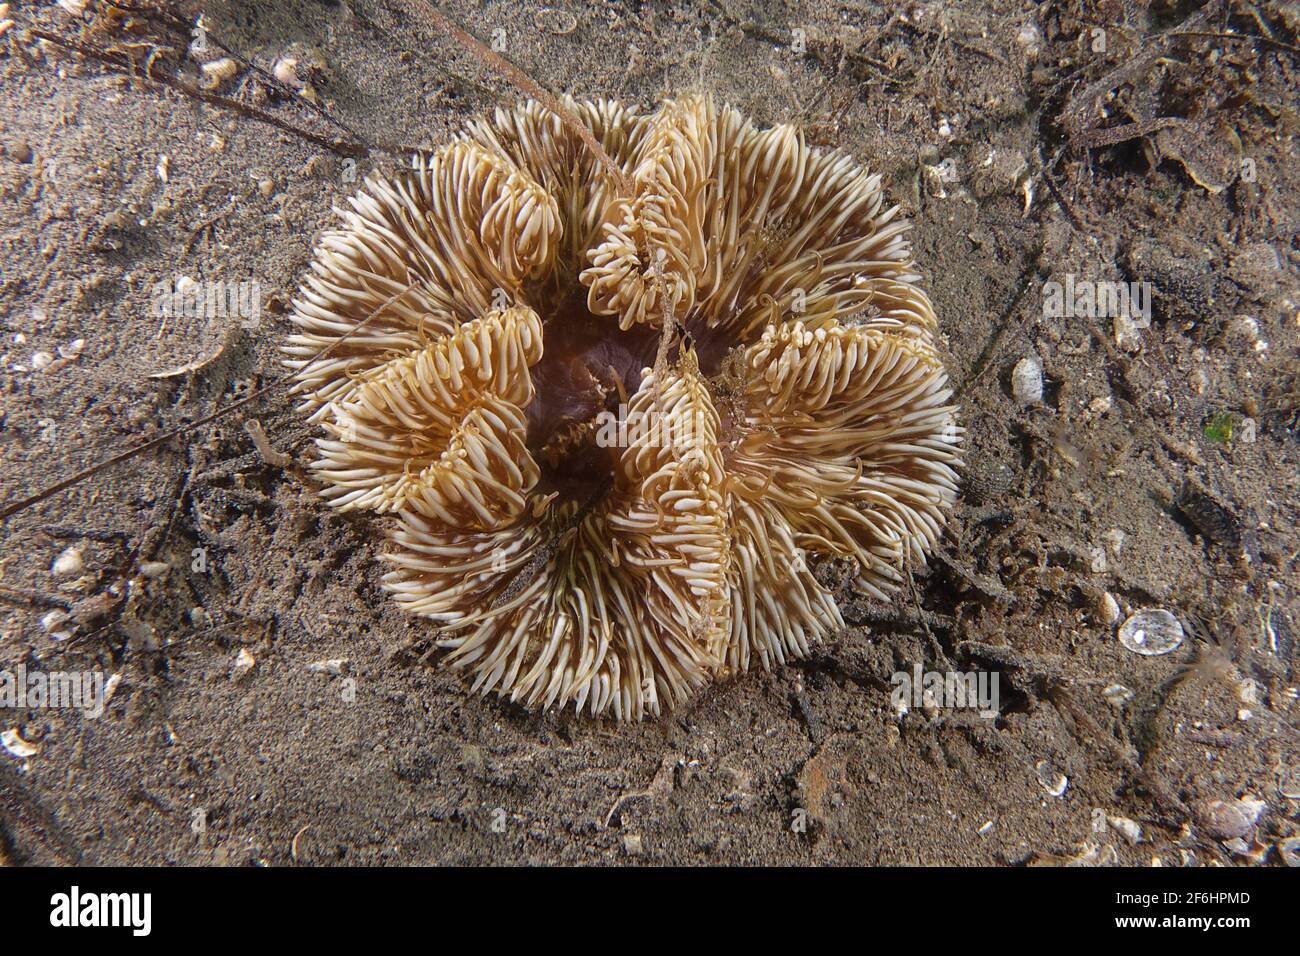 Daisy anemone (Cereus pedunculatus) Stock Photo